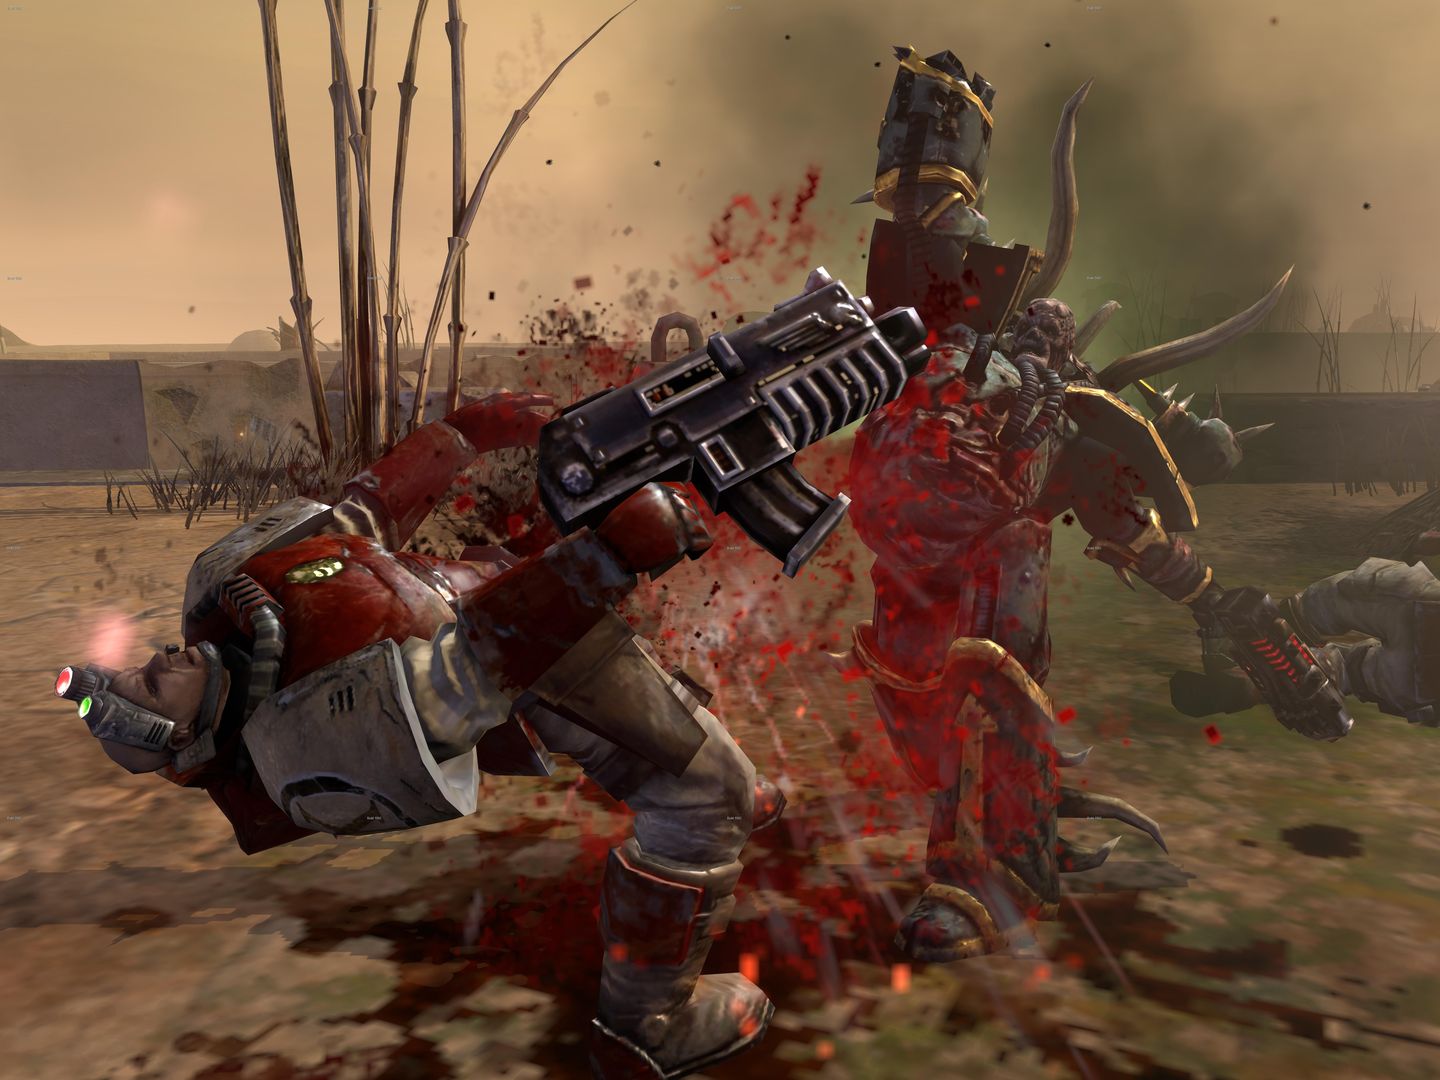 Warhammer 40,000: Dawn of War II - Възмездие - Допълнение към гоночному пакет космически парашутисти Хаос [Кода на онлайн-игра]